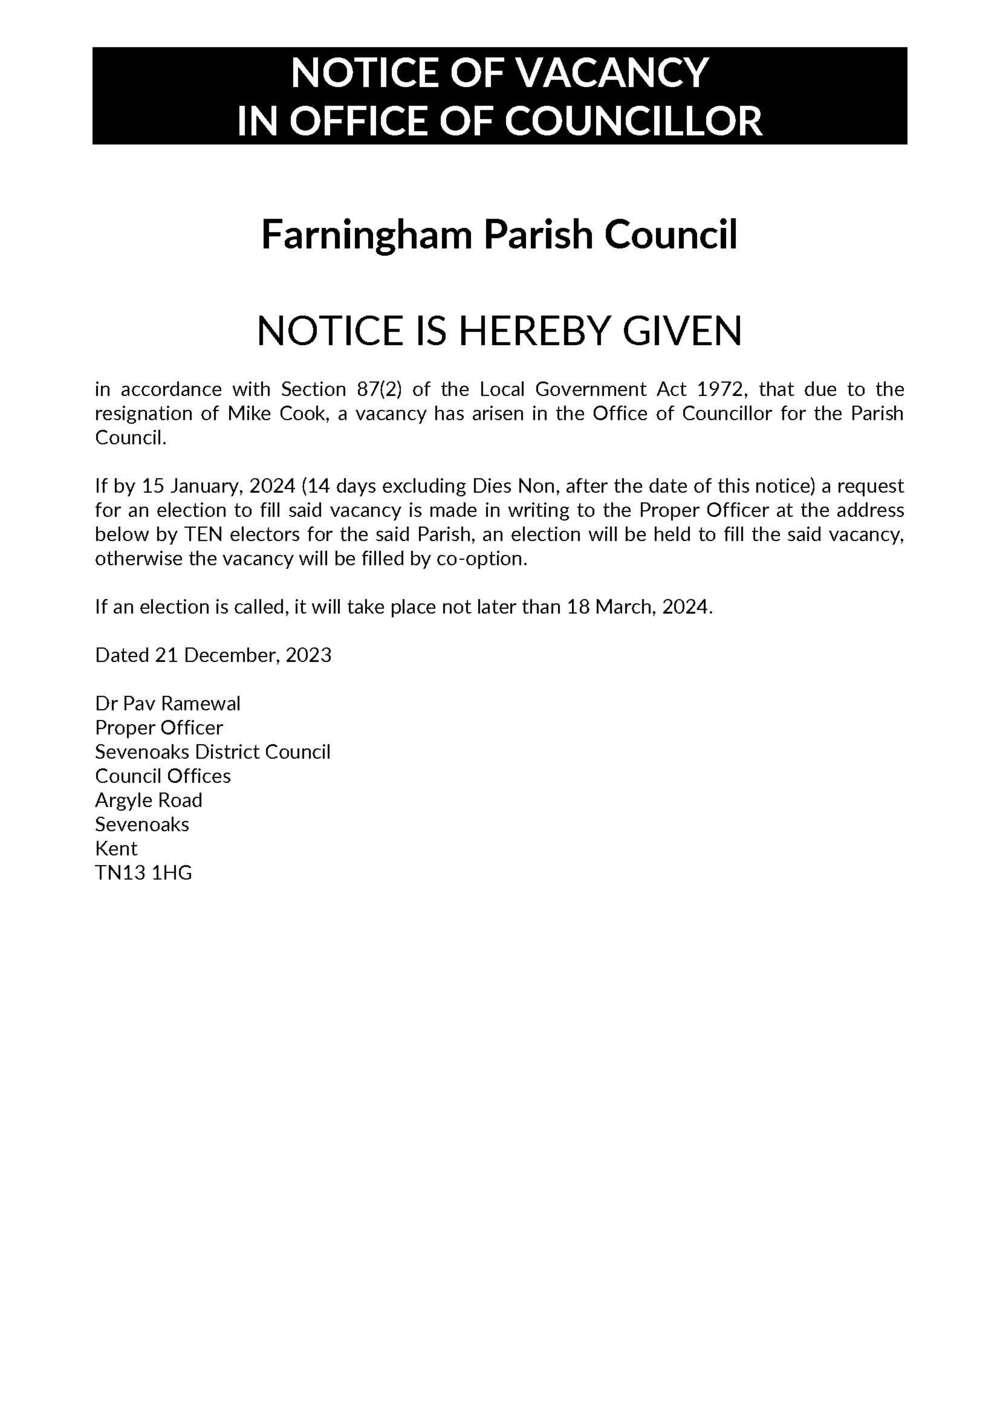 Notice of Councillor Vacancy